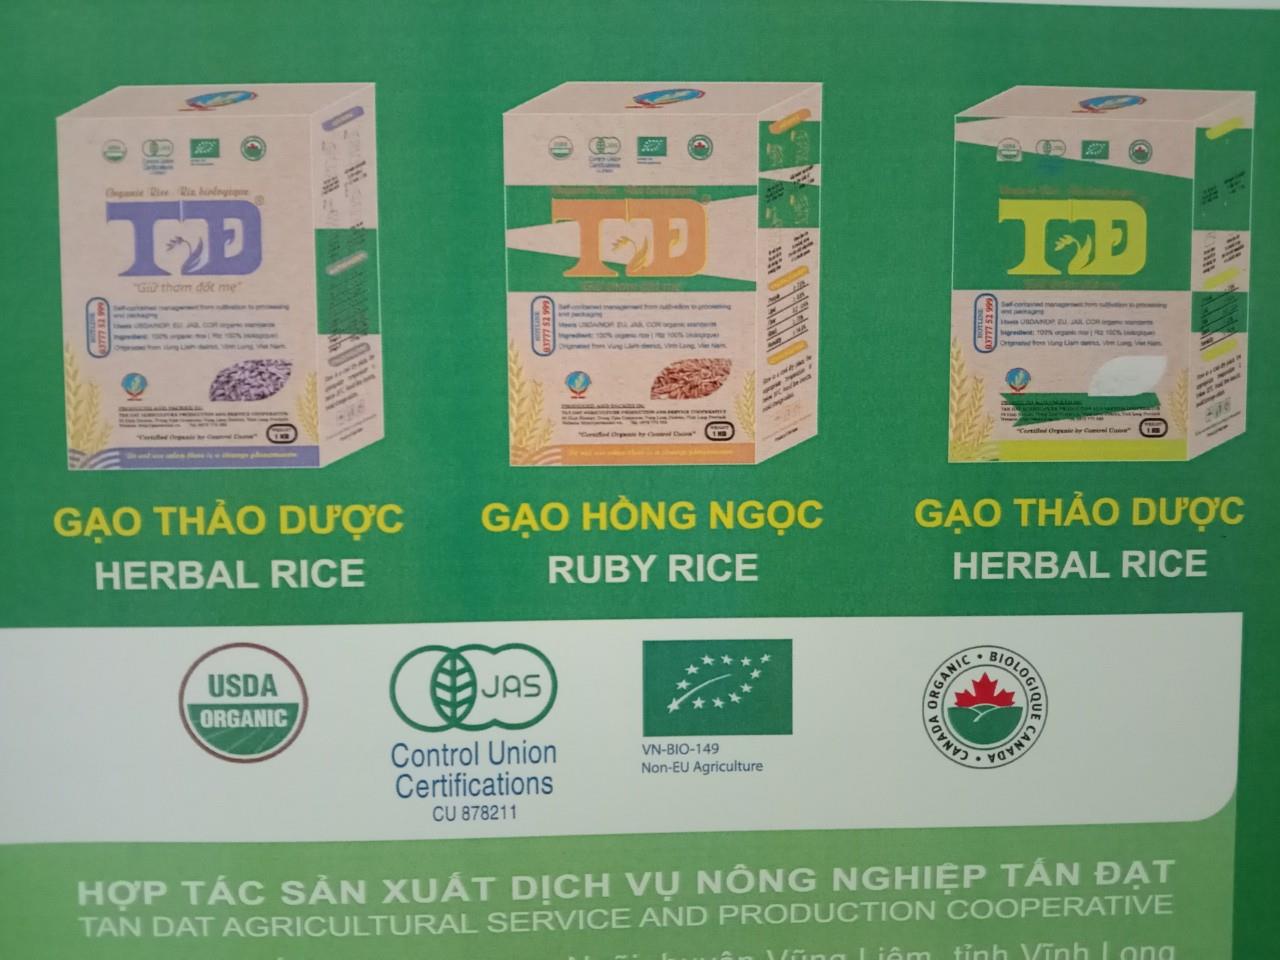 Gạo sản xuất theo hướng hữu cơ